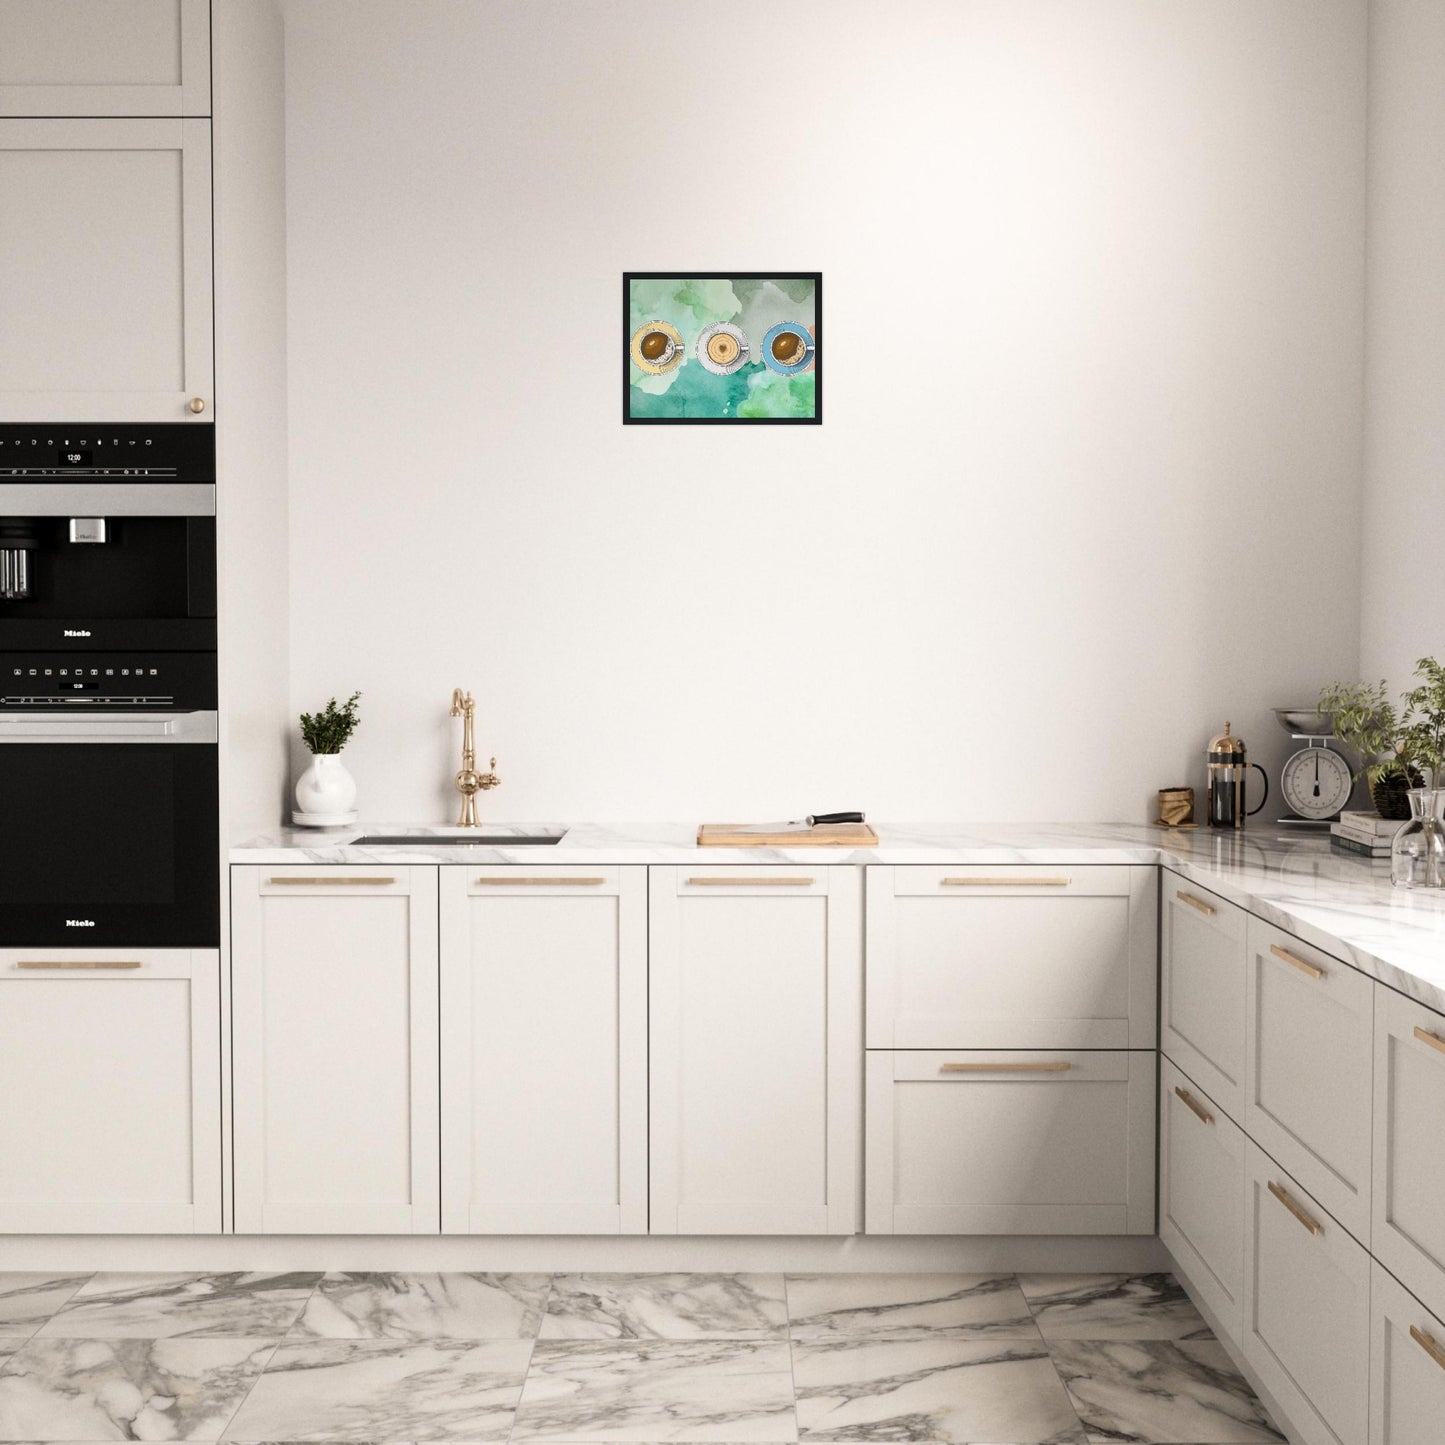 Ein Bild im Schwarzem Rahmen mit buntem Hintergrund in Wasserfarben. Im Vordergrund Sind Drei Tassen Kaffe. Eine Tasse Beige, Weiß und Blau. Das Bild hängt über einer Küche.